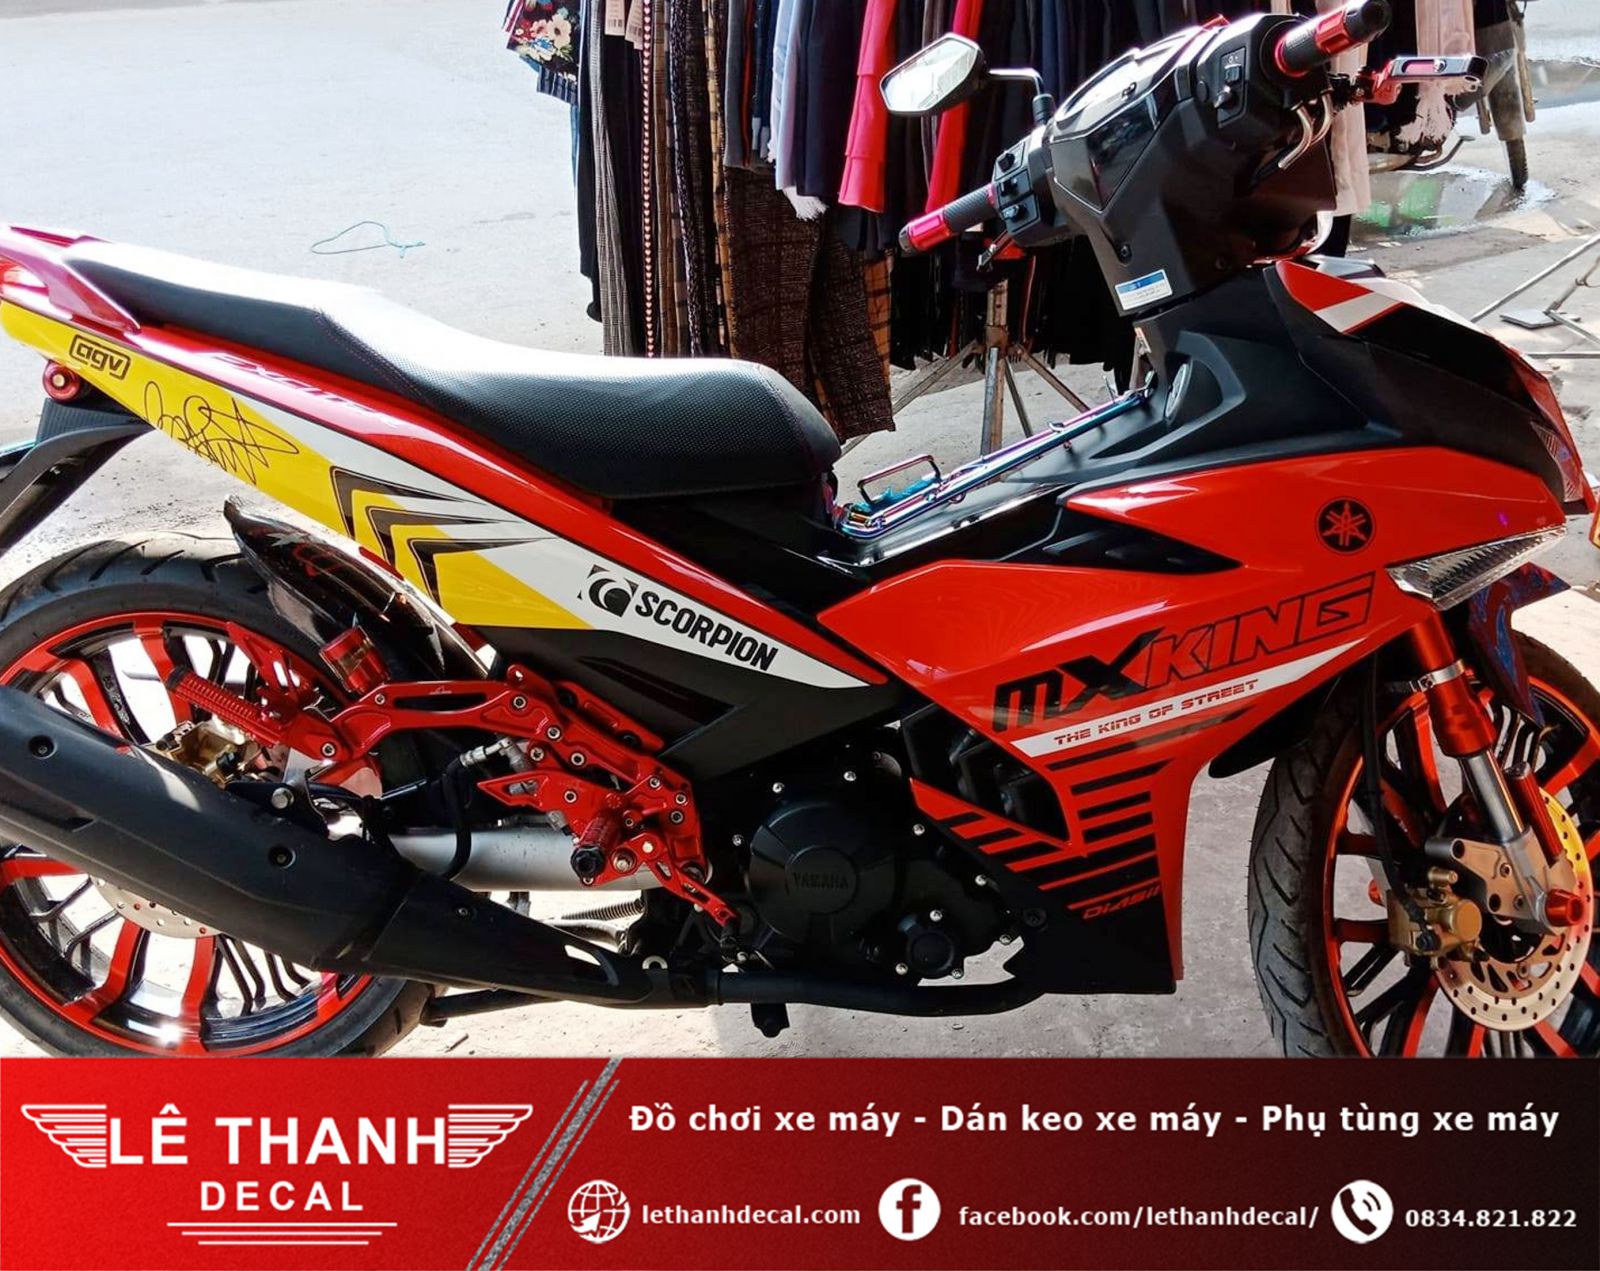 [TOP] 10+ tiệm dán decal xe máy tại huyện Bình Chánh uy tín, chất lượng 2023 